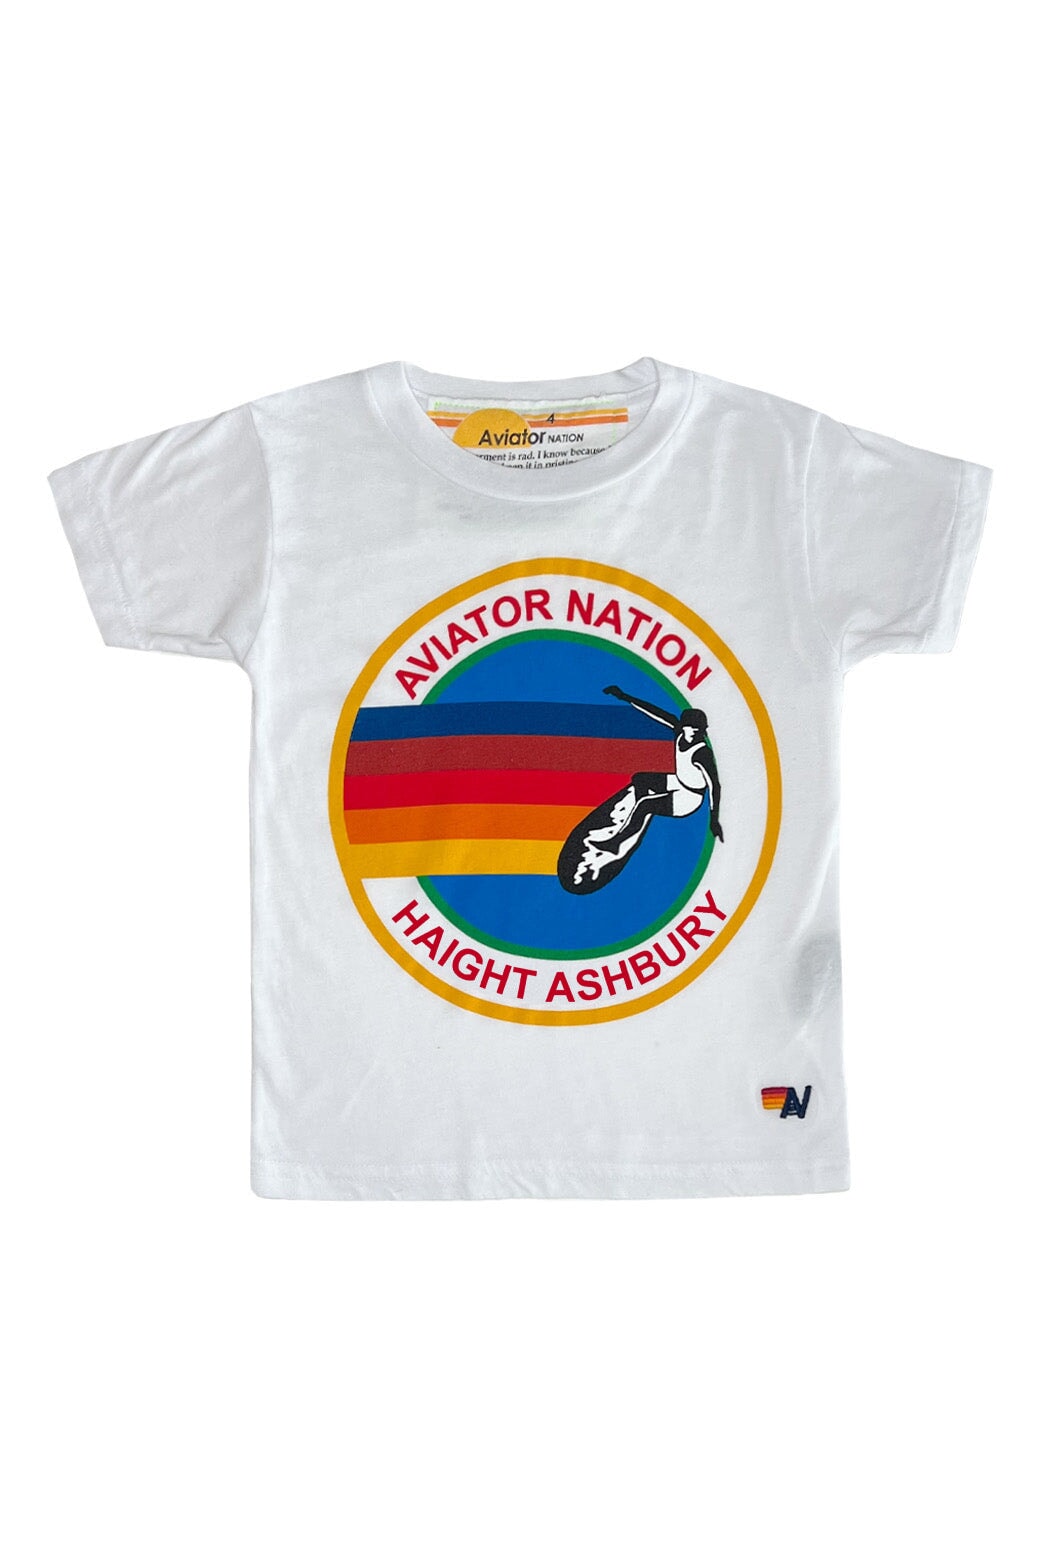 KID'S AVIATOR NATION HAIGHT ASHBURY TEE - WHITE Kid's Tee Aviator Nation 